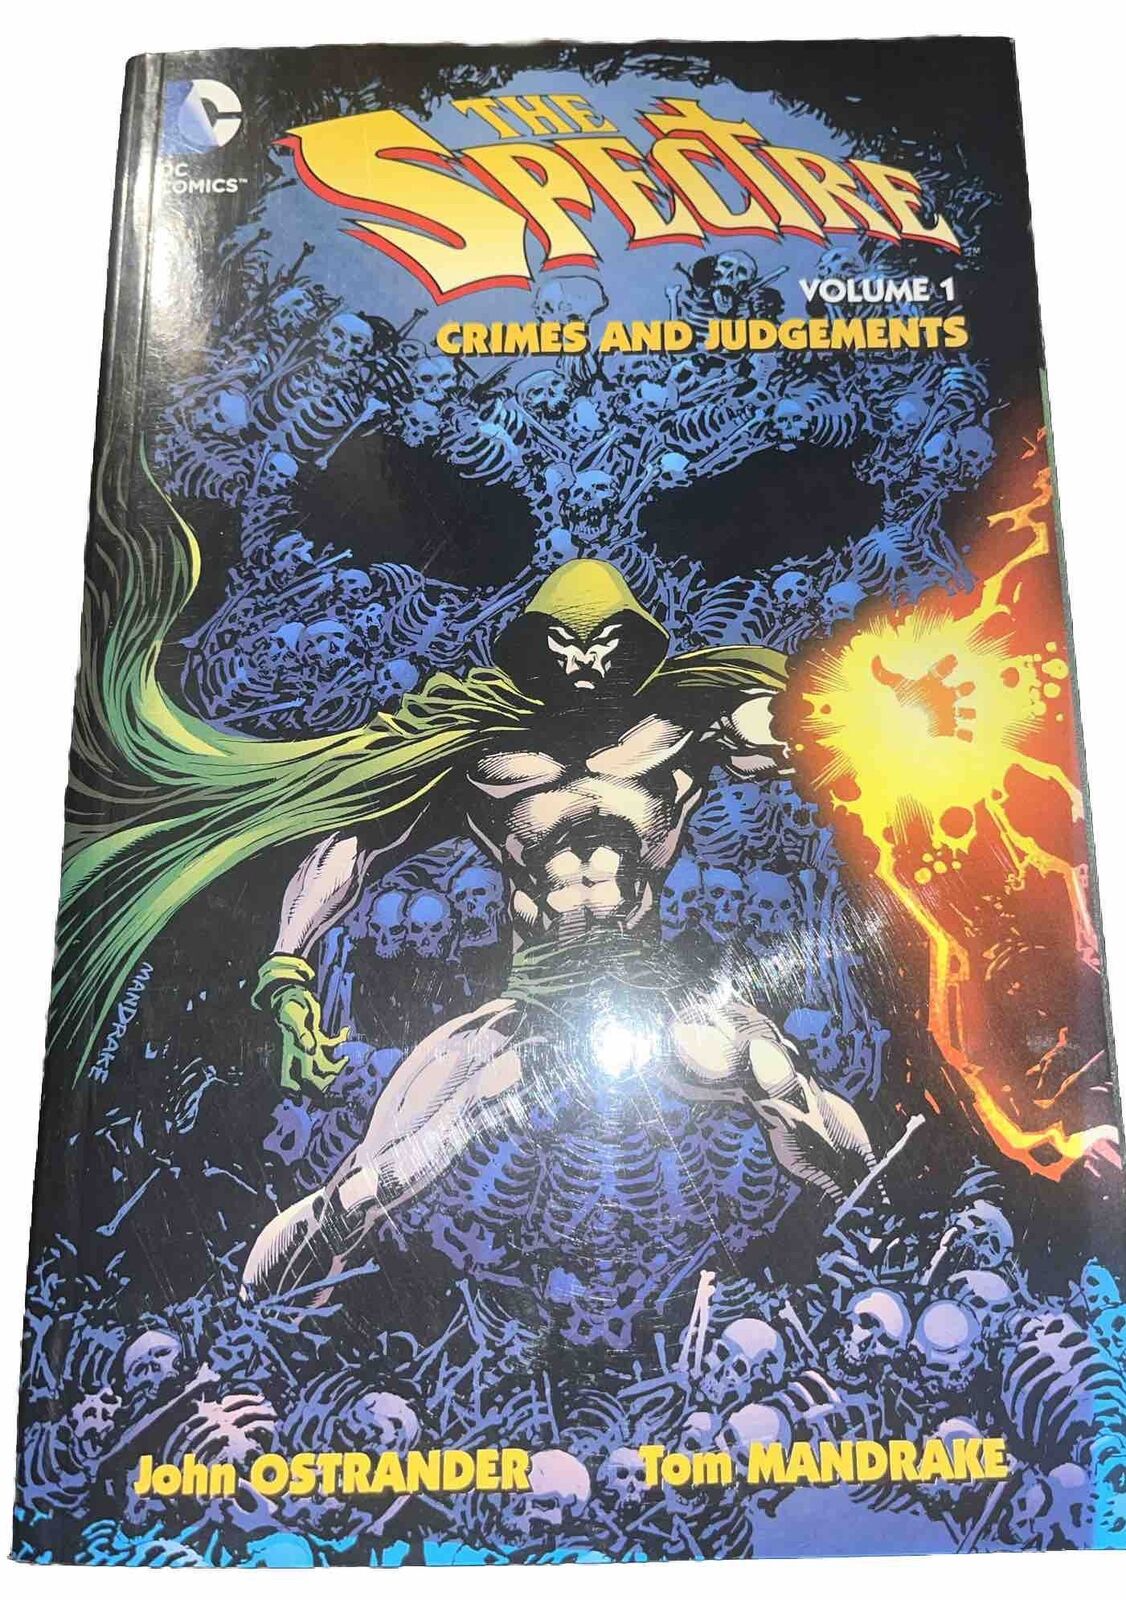 The Spectre Vol. 1: Crimes and Judgments DC Comics, 2014 By John Ostrander